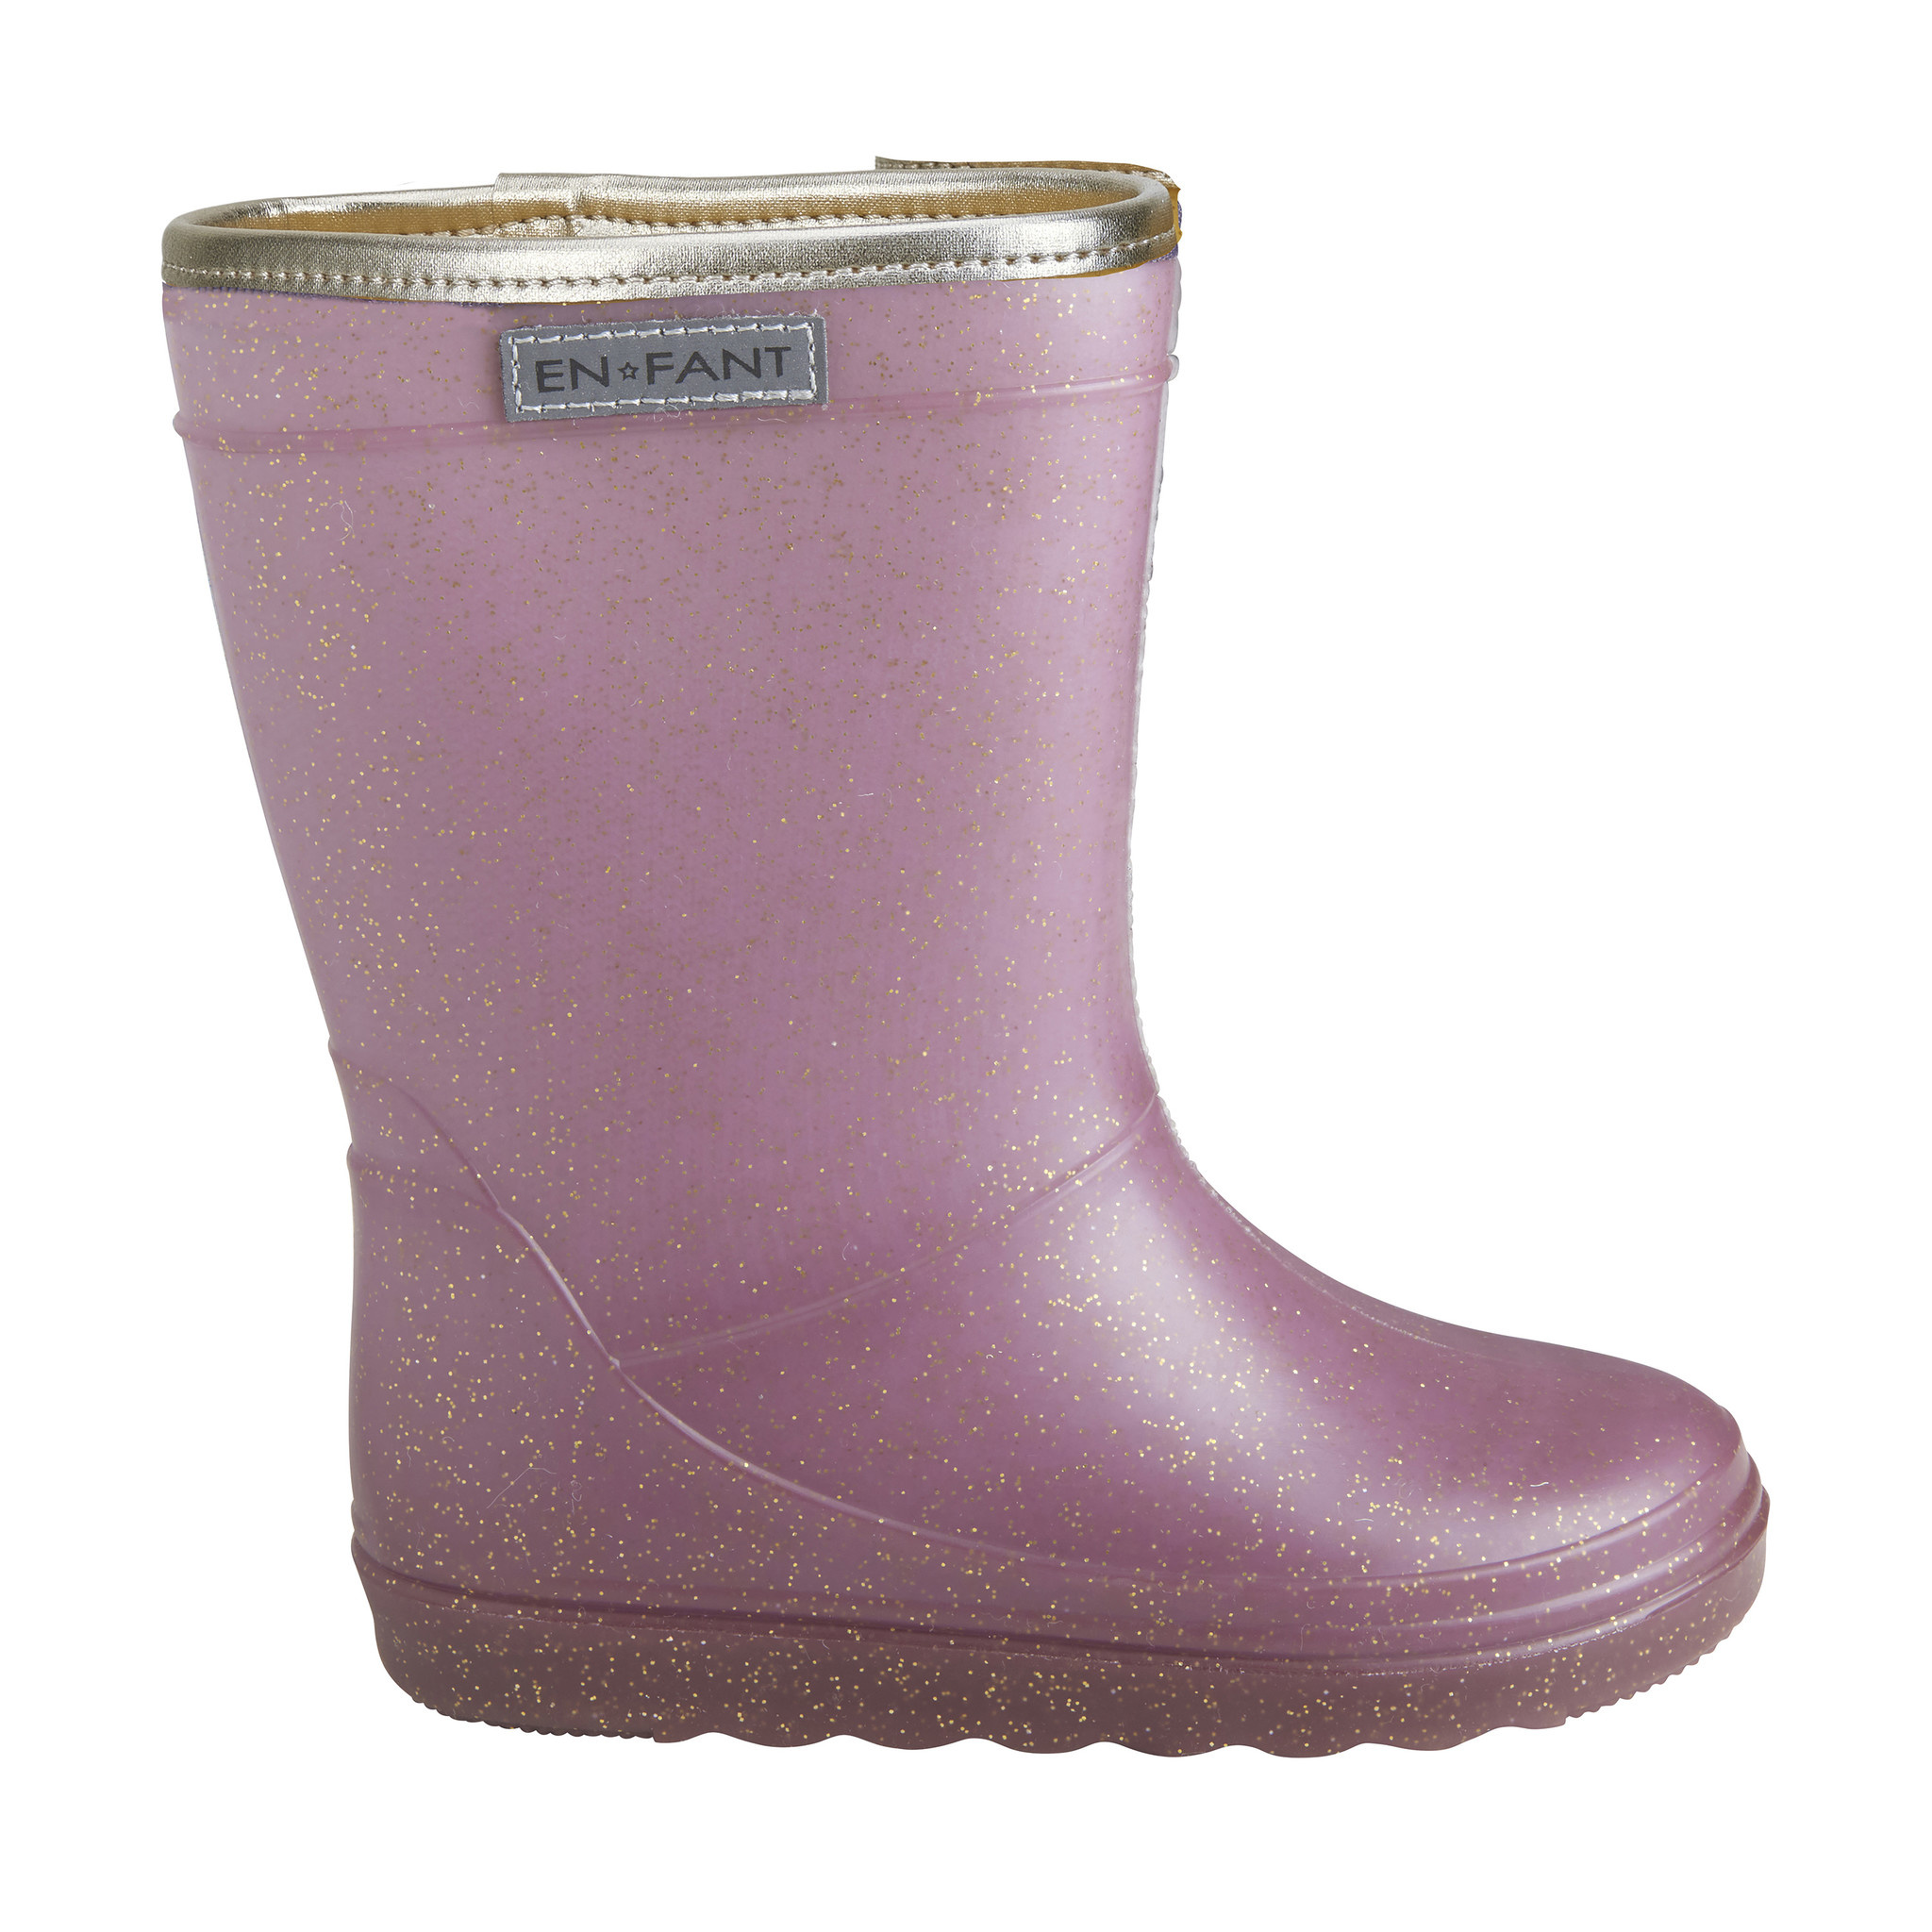 papier Nuttig Veilig gevoerde regenlaarzen - thermo boots glitter - 6405 Flint - paars - Milck